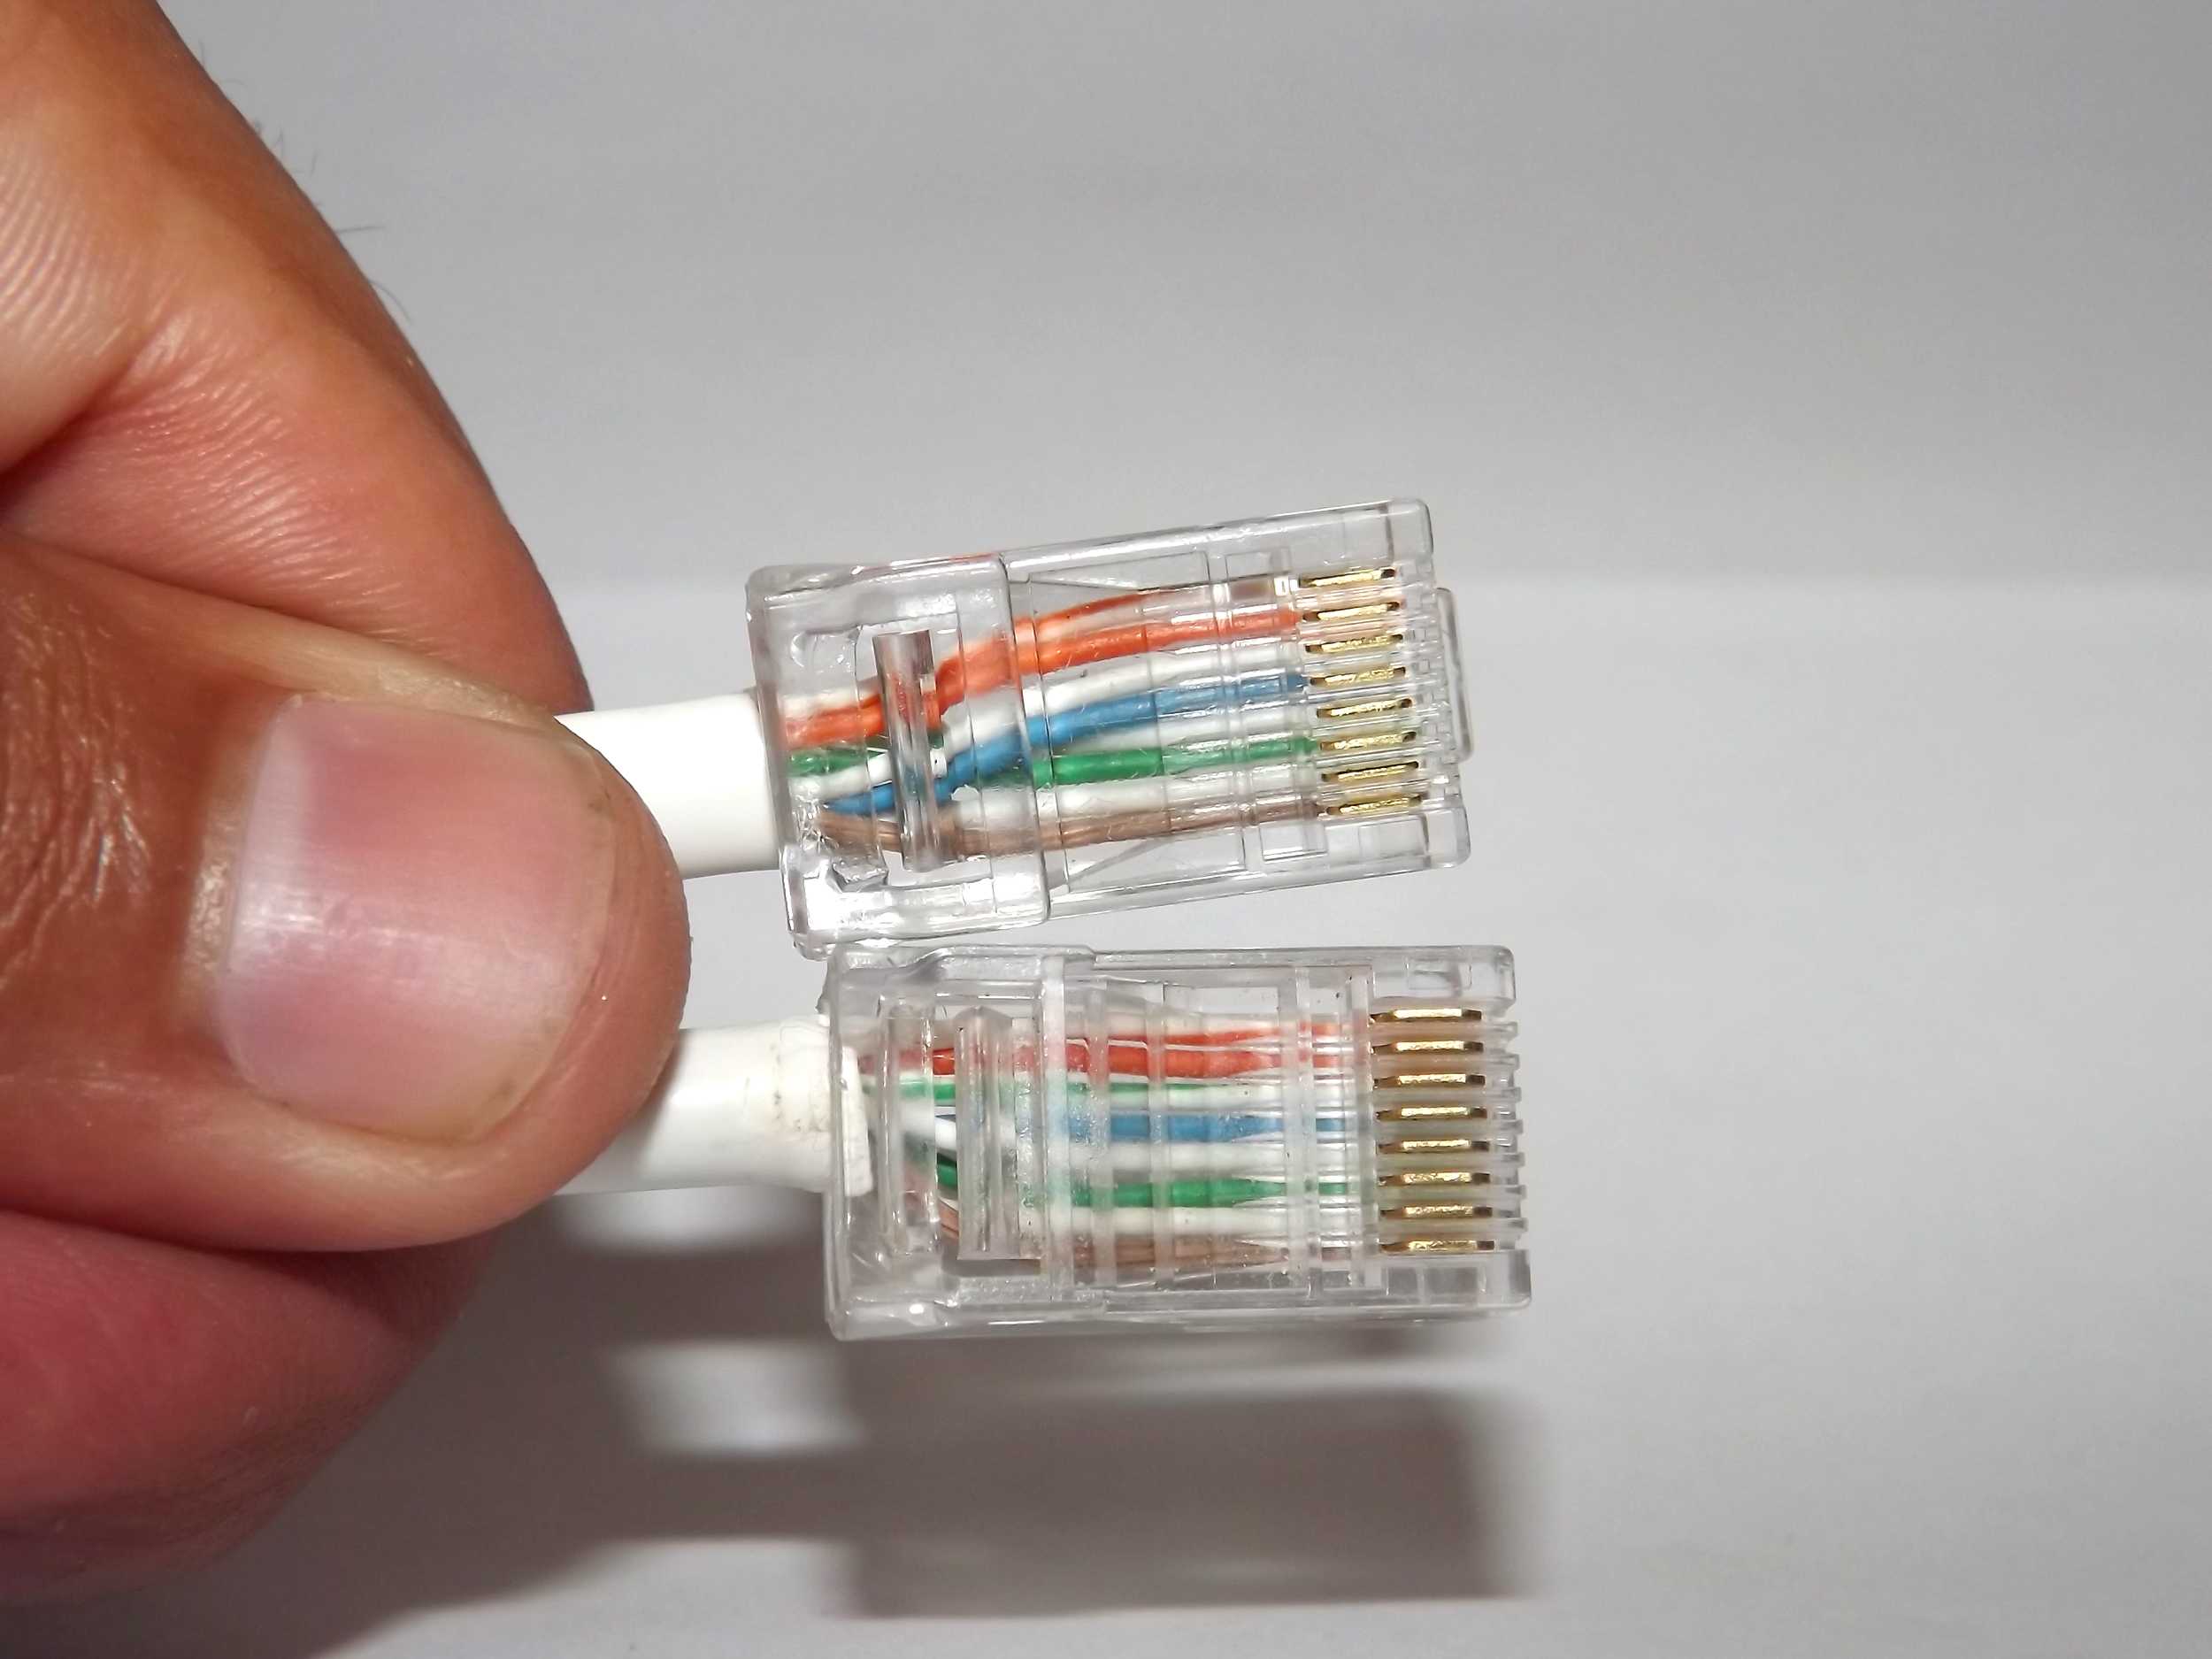 Как правильно обжать интернет кабель дома самостоятельно?